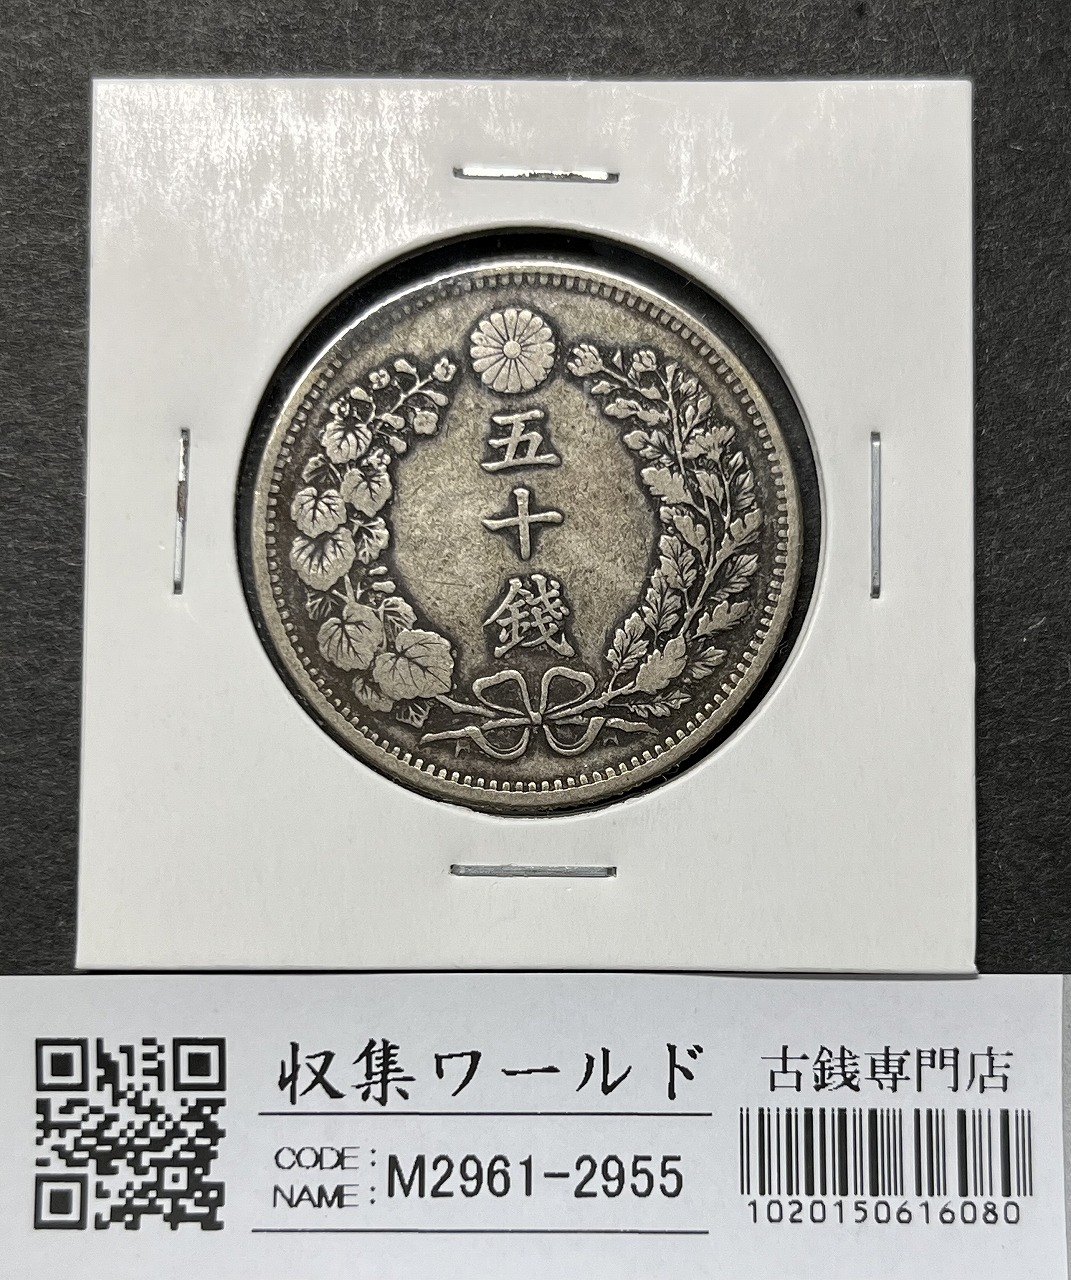 竜50銭銀貨 明治32年銘(1899年) 近代銀貨 竜五十銭 美品